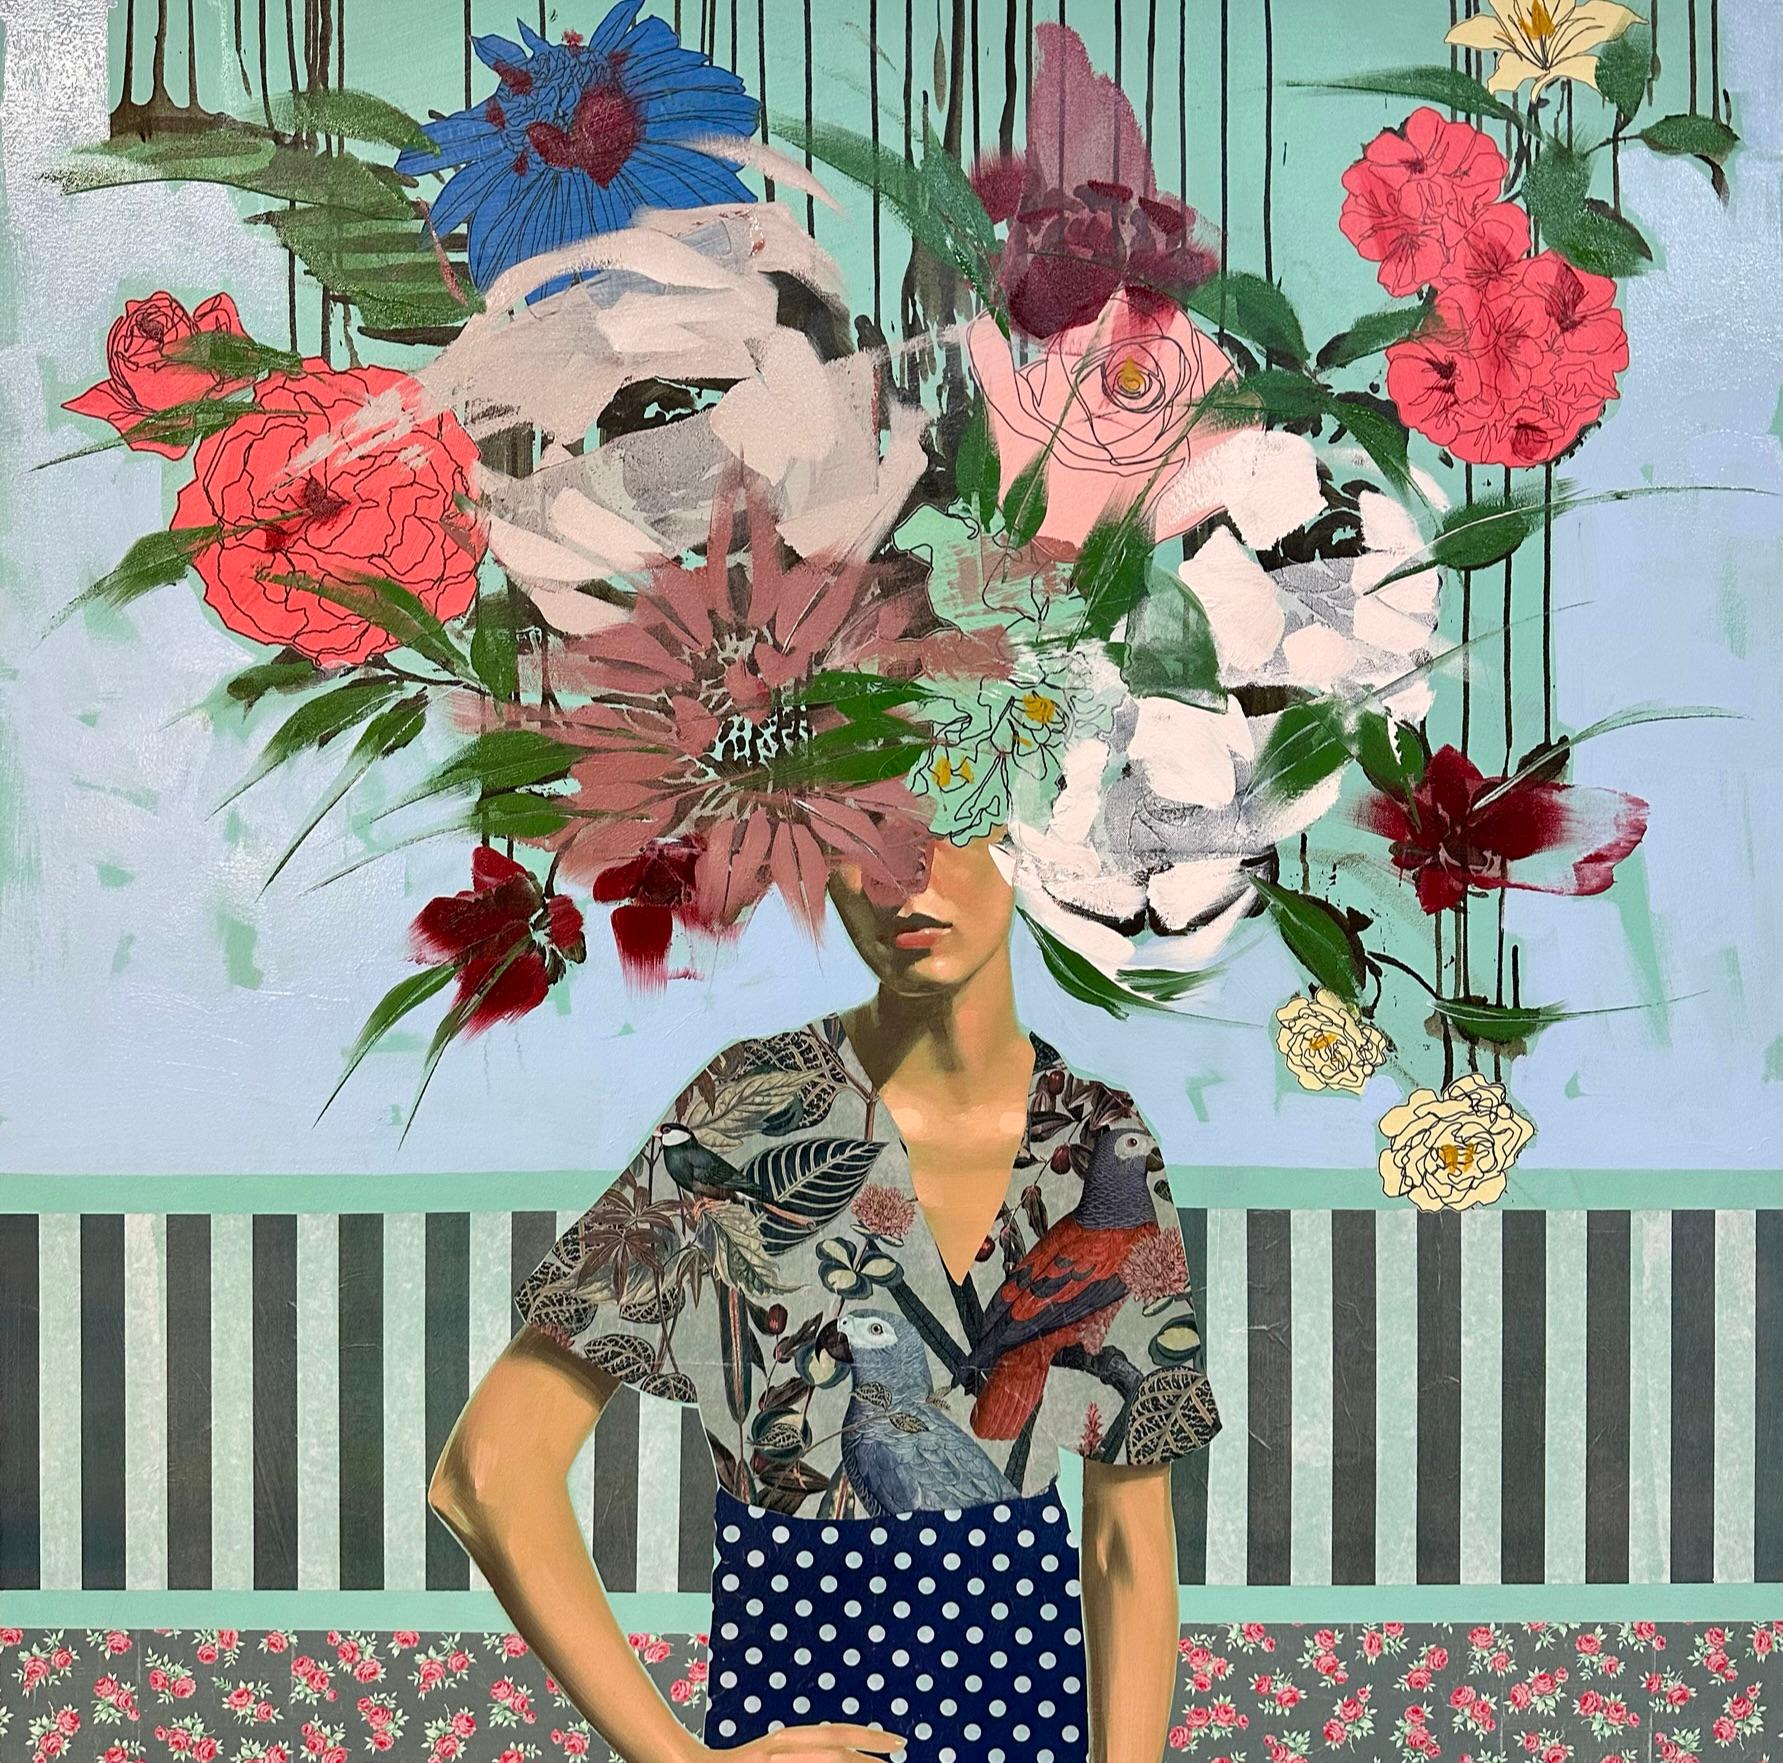 ANNA KINCAIDE
"Lass es wachsen"
Öl & Mischtechnik auf Leinwand
48 x 48 Zoll

Anna Kincaide kommuniziert Emotionen und Erzählungen mit begrenzter Unterstützung durch die Mimik ihrer Figuren und schafft Kaskaden von Blumen, die ihre Motive bedecken,